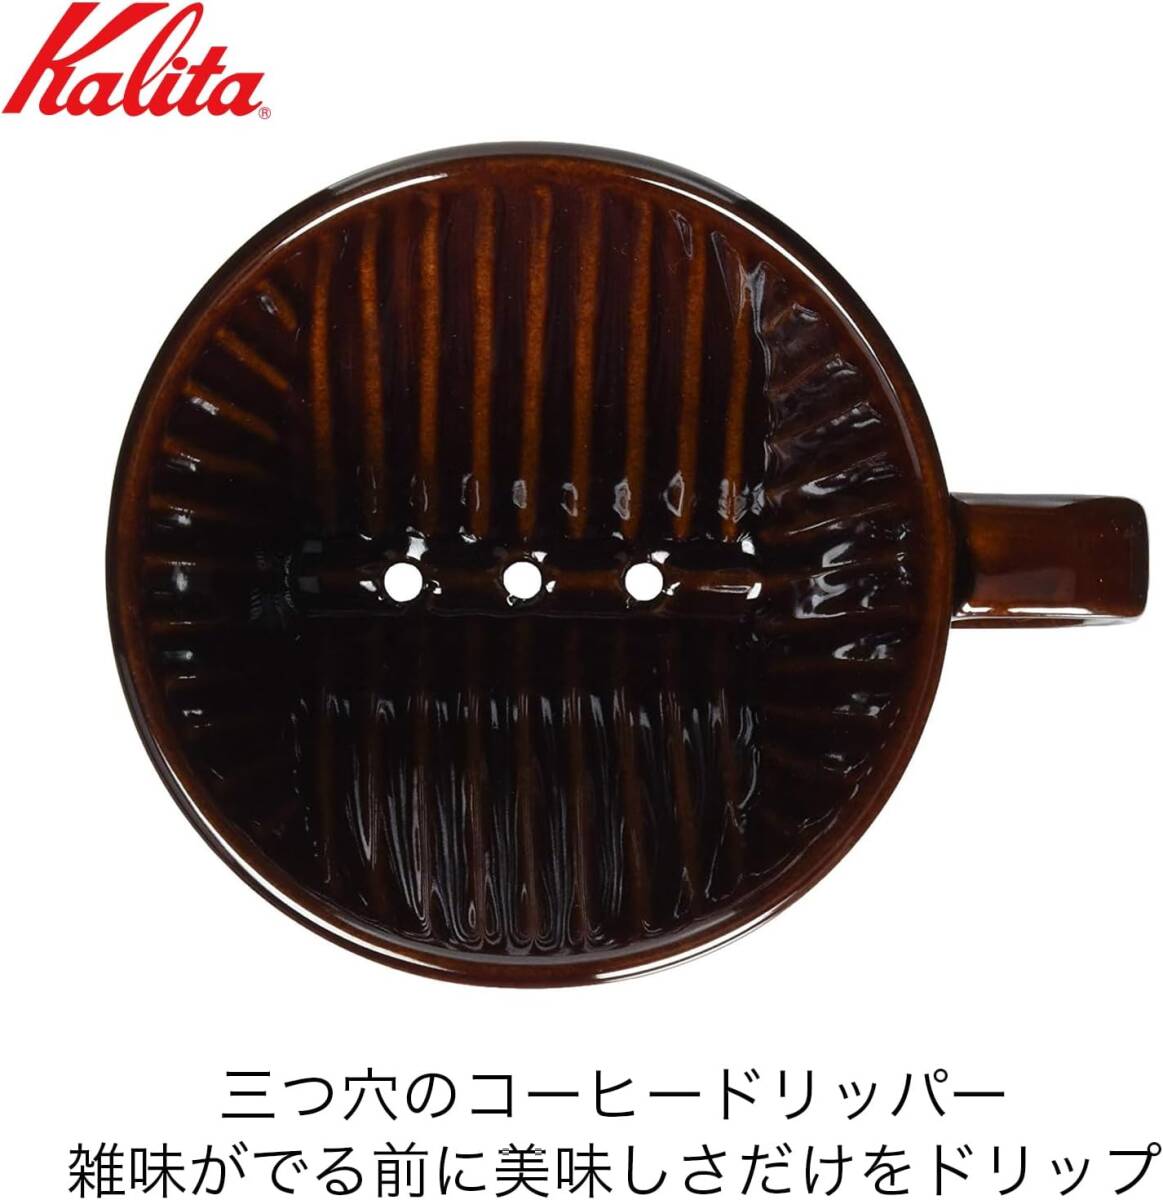 カリタ Kalita コーヒー ドリッパー 陶器製 ブラウン 2~4人用 102 日本製 102-ロトブラウン ドリップ 器具 喫_画像2